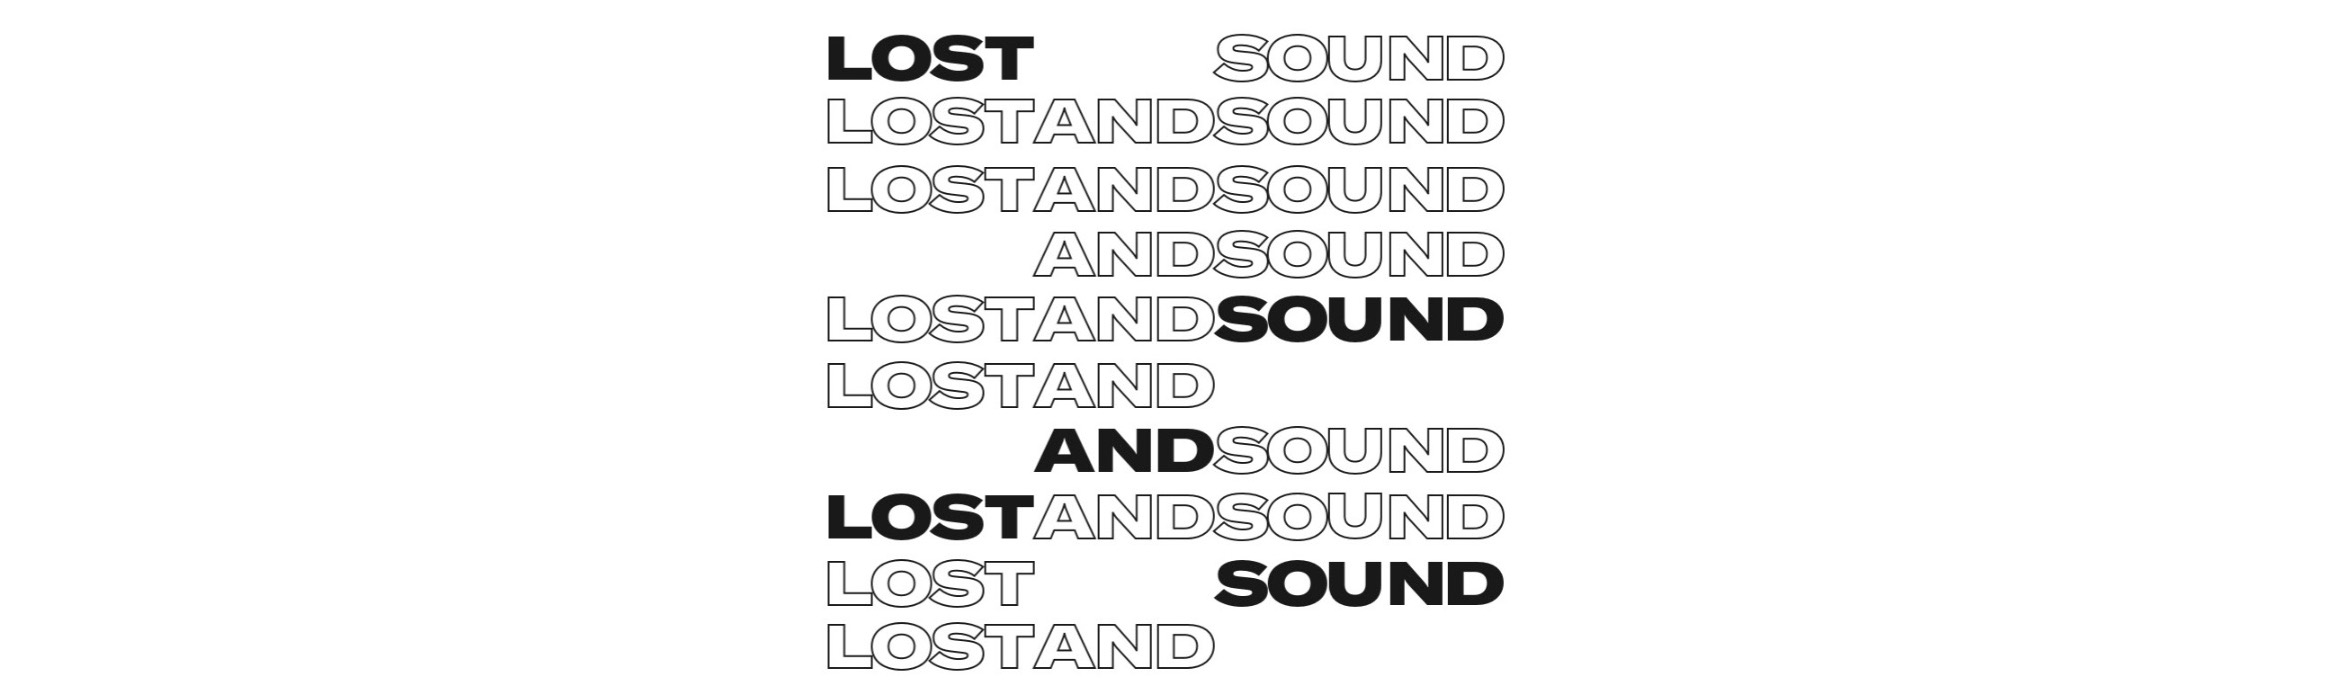 lost&sound_00